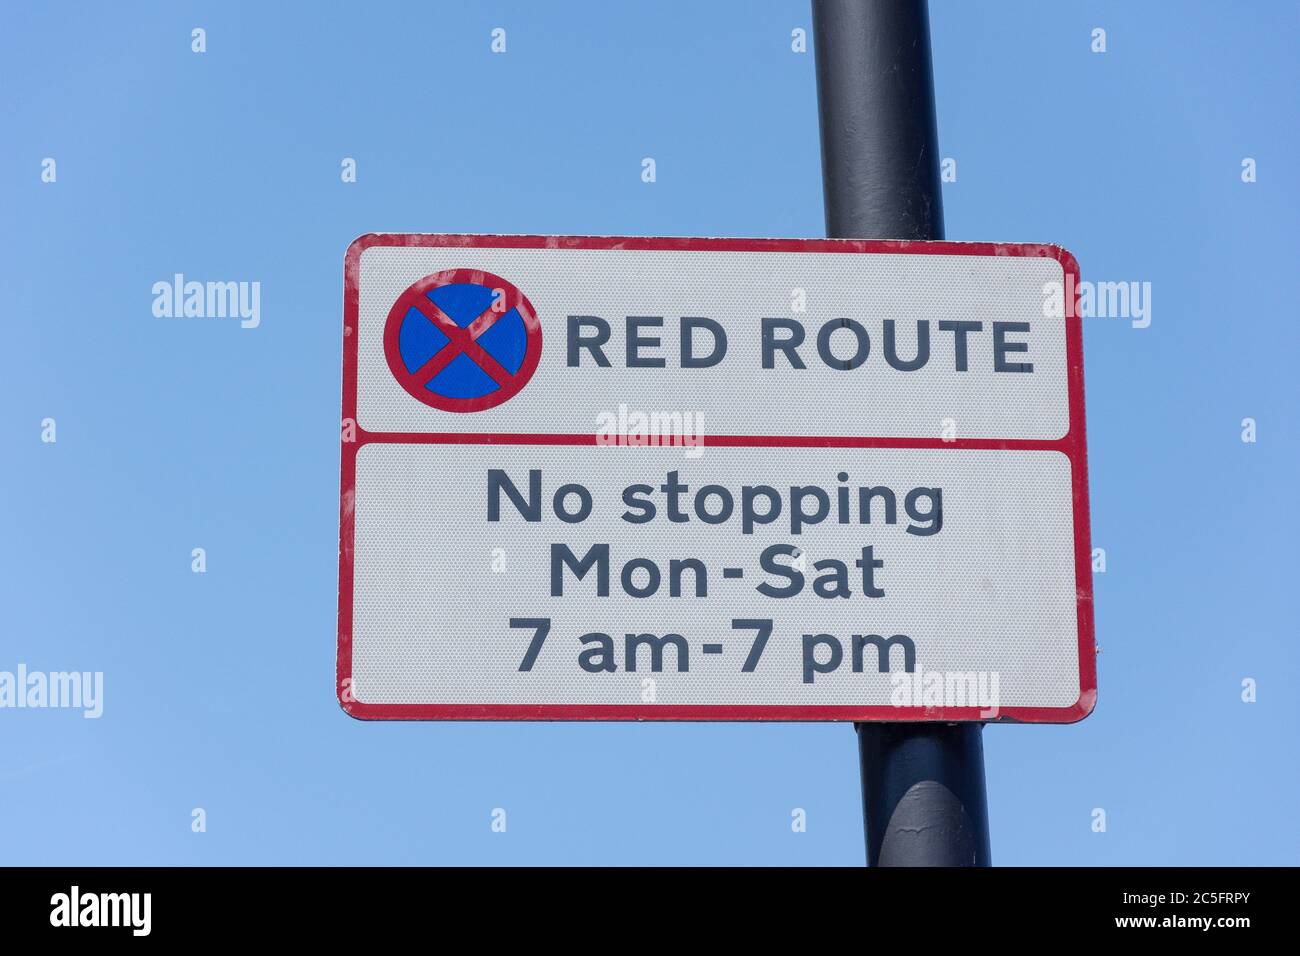 Route rouge pas de panneau d'arrêt, Roehampton Lane, Roehampton, London Borough of Wandsworth, Greater London, Angleterre, Royaume-Uni Banque D'Images